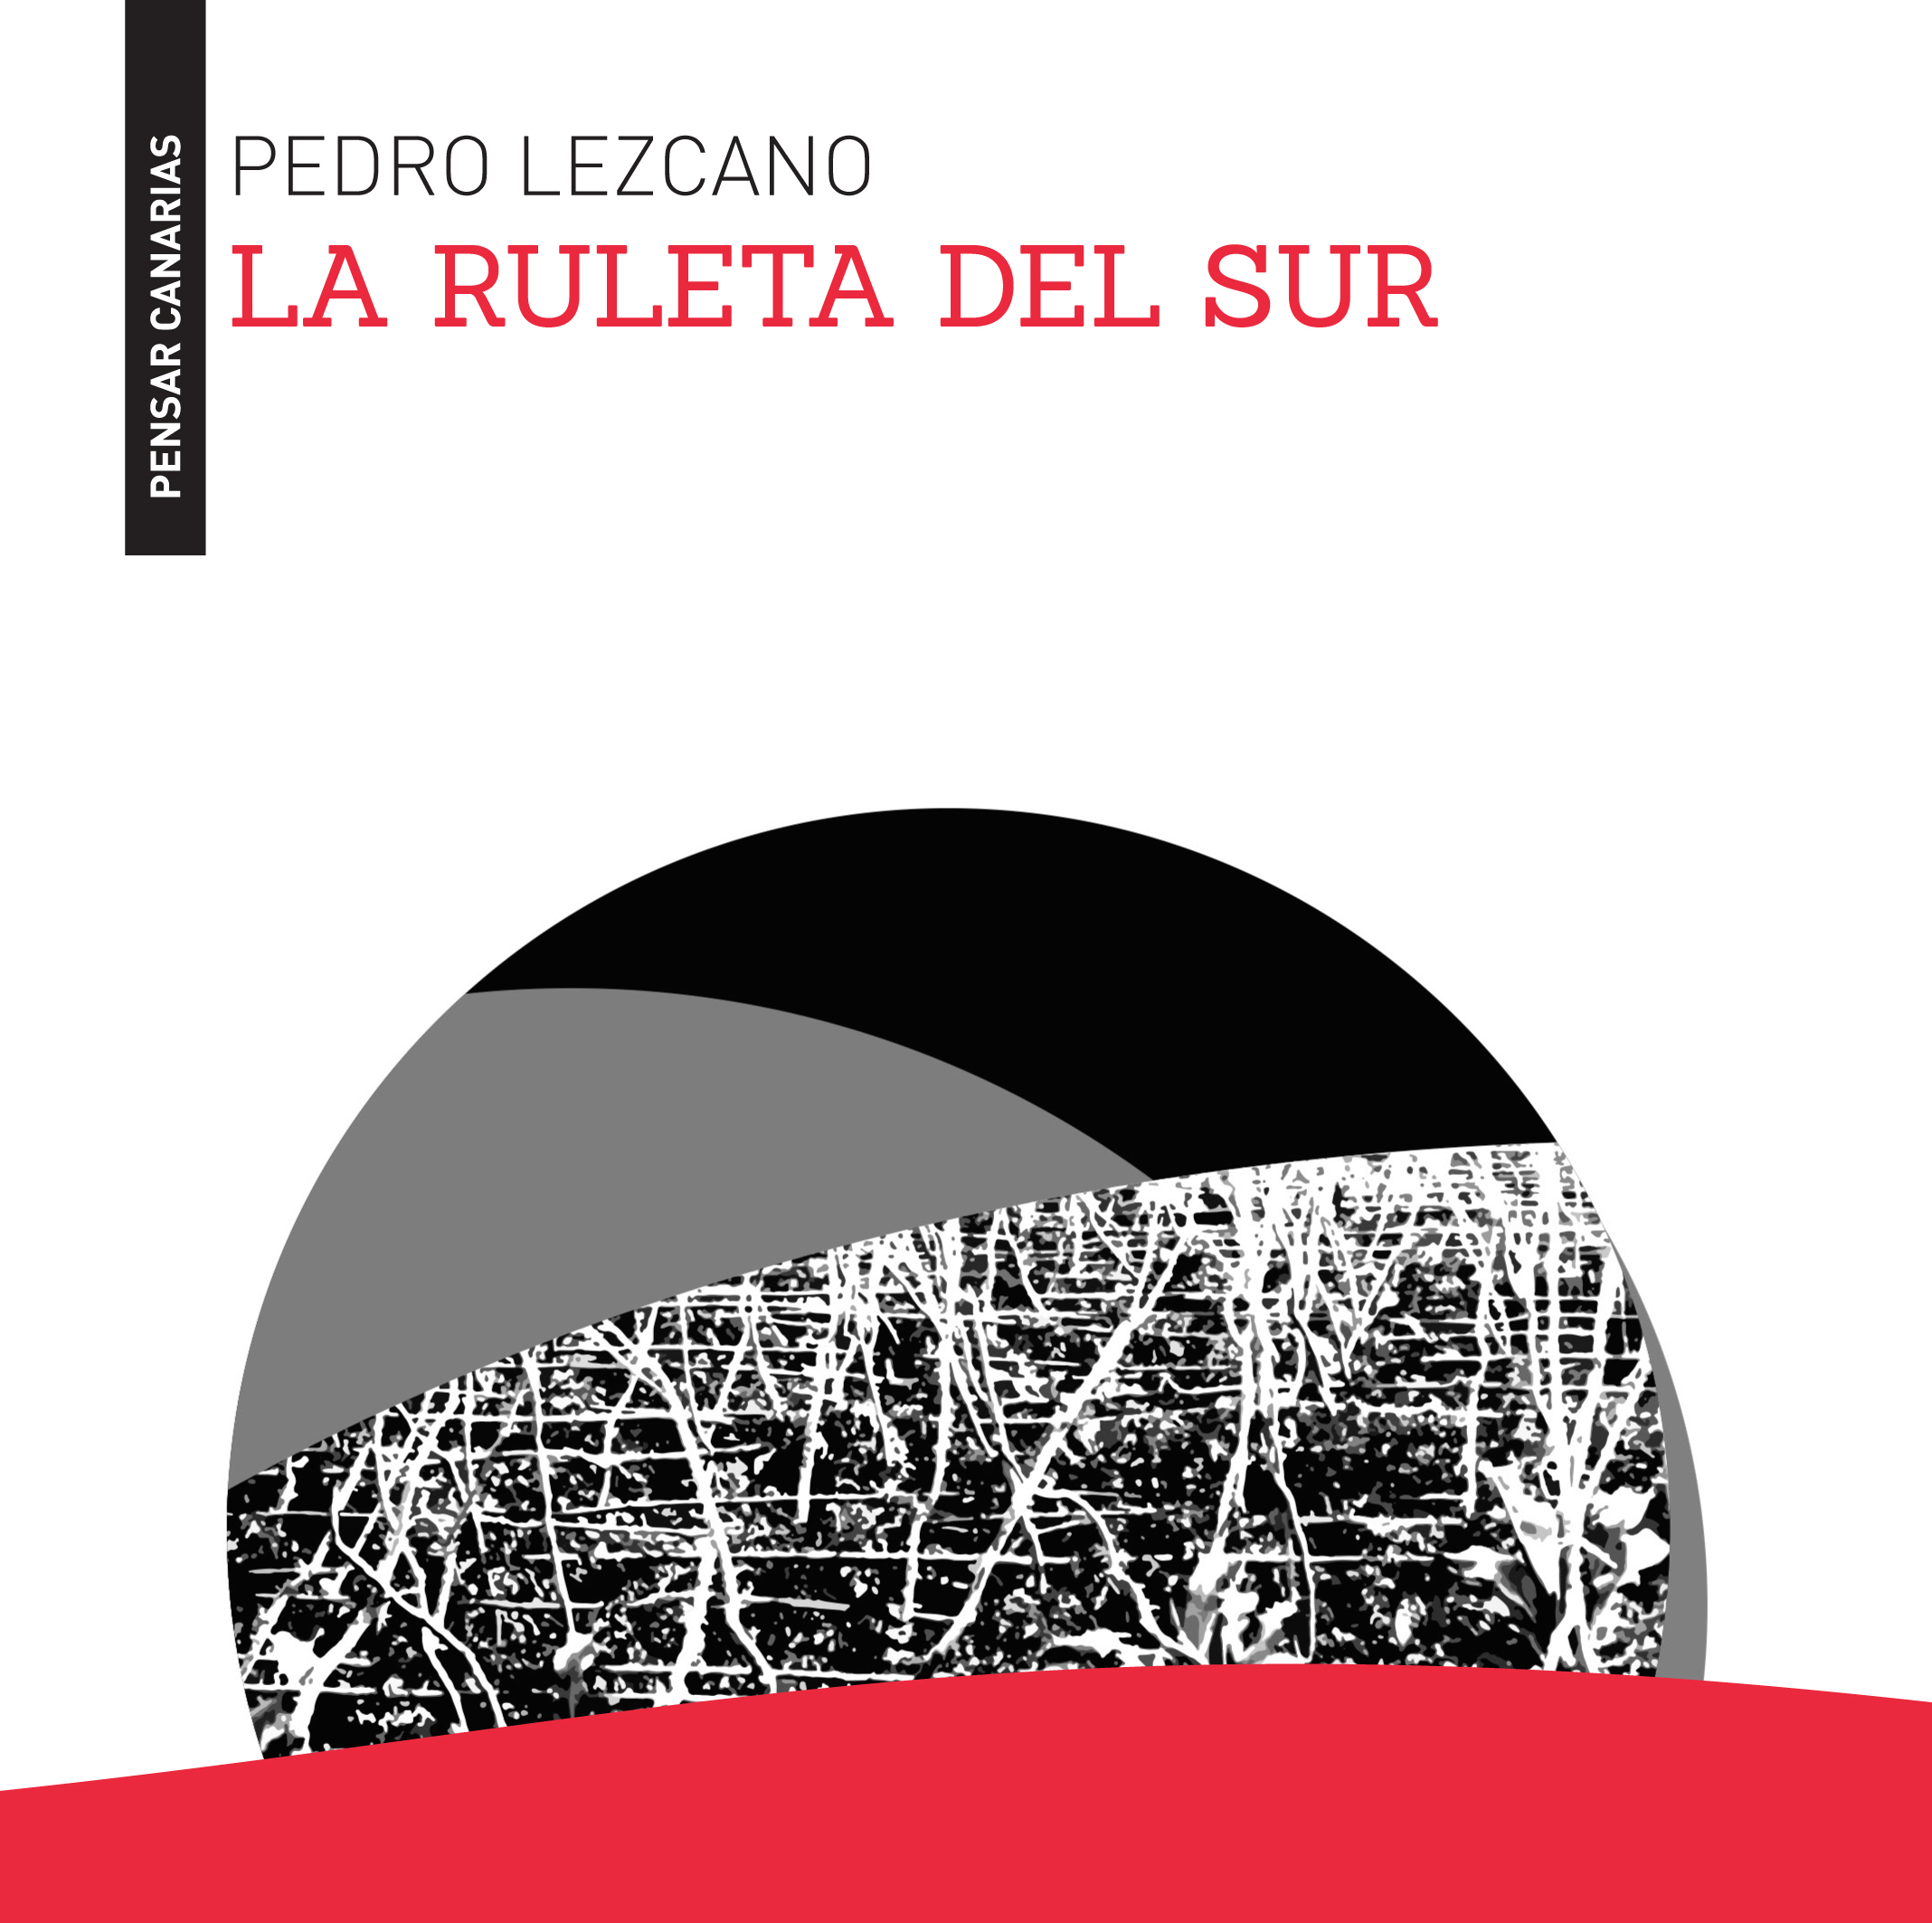 El volumen de Pedro Lezcano editado por el Cabildo grancanario